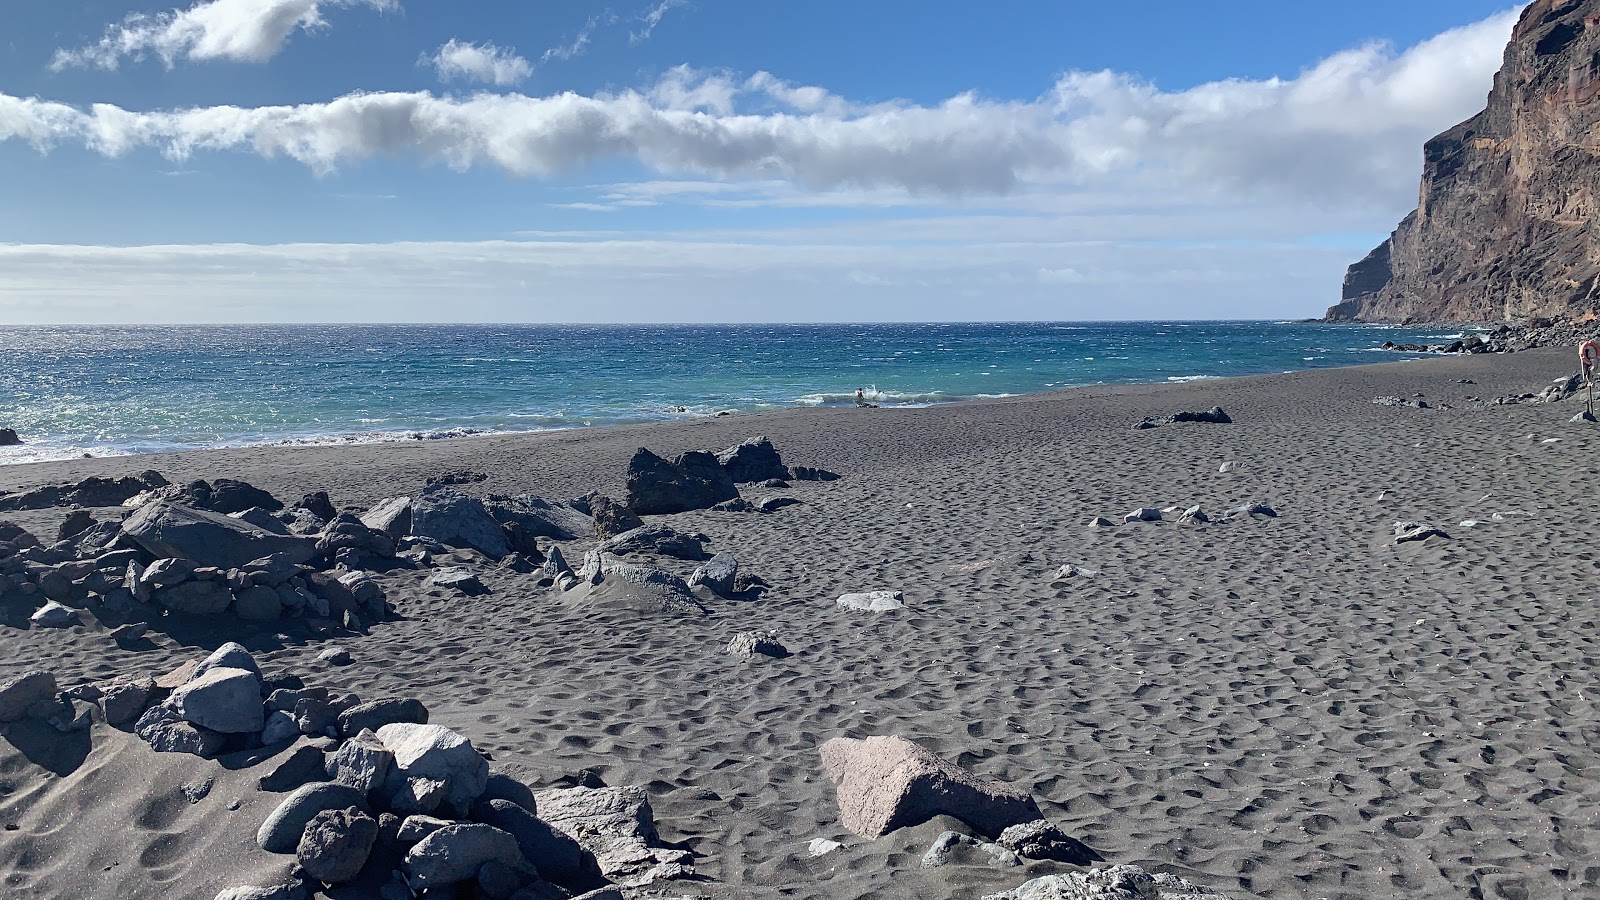 Zdjęcie Playa del ingles z powierzchnią szary piasek